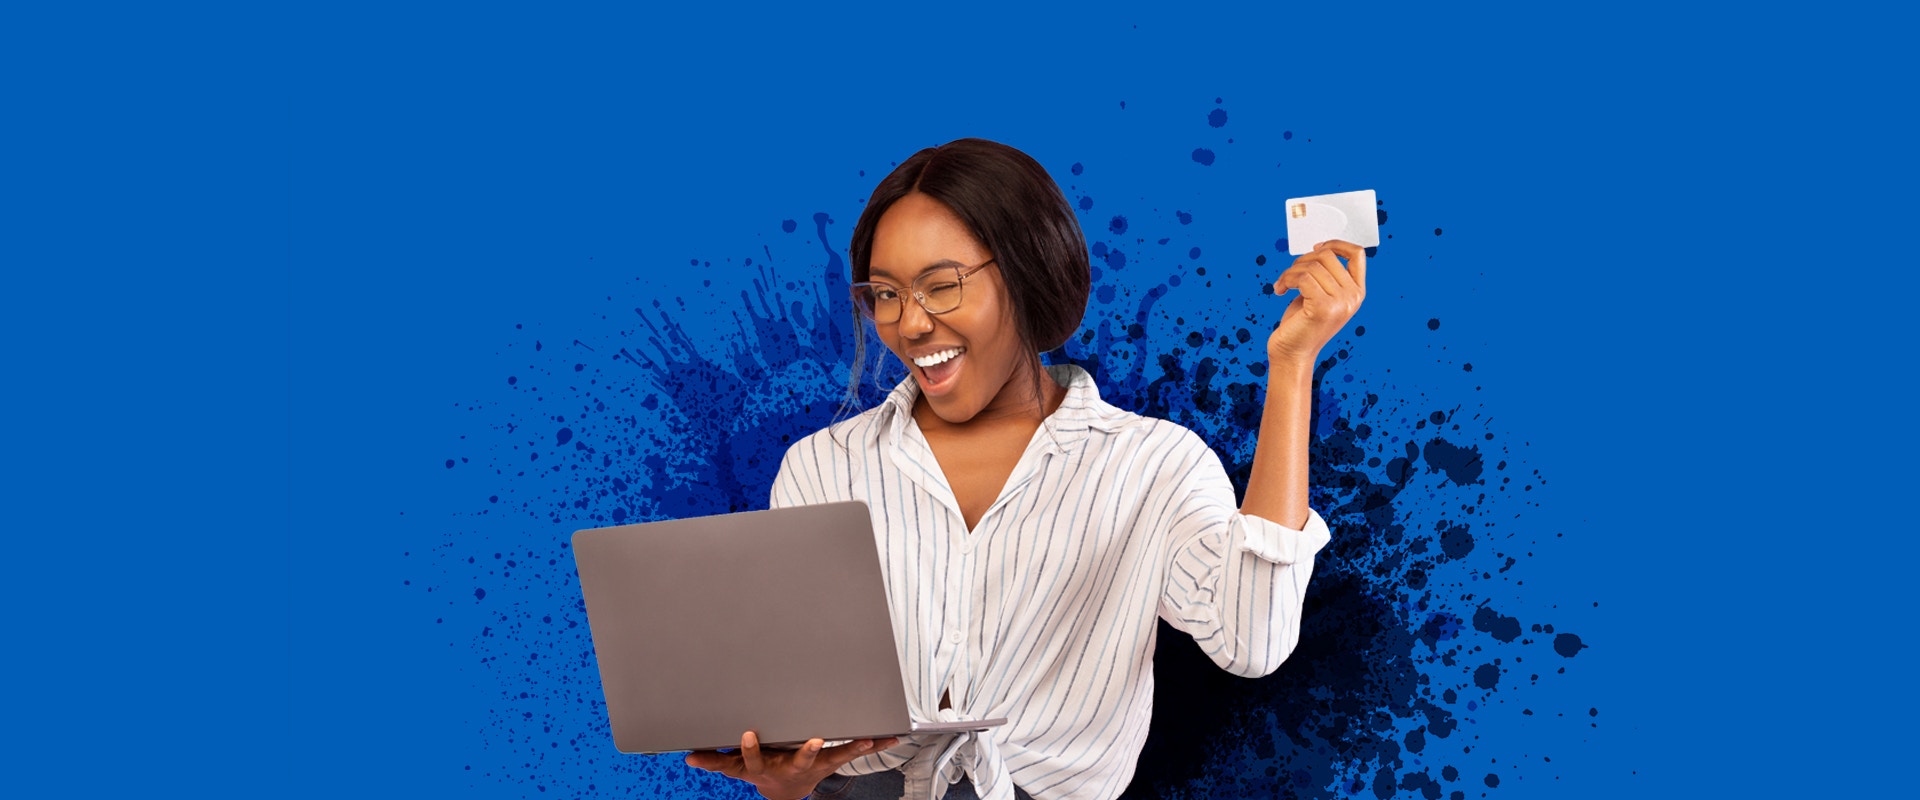 Eine junge Frau trägt einen Computer, hält eine Kreditkarte hoch und zwinkert.